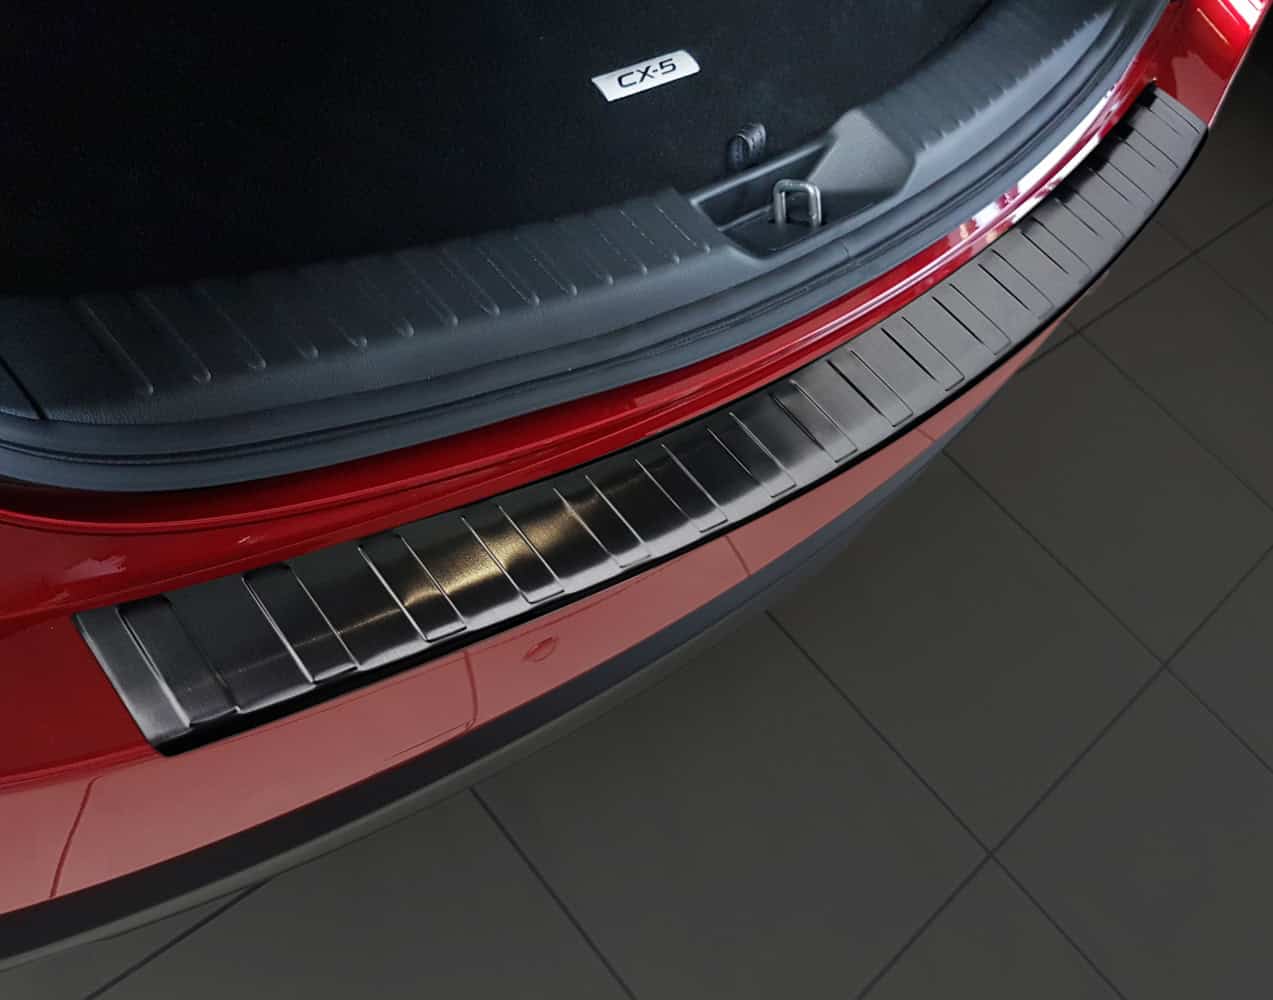 Für Mazda CX5 Zentrale Wasserbecher Zubehör Teile Edelstahl Abdeckung 2017